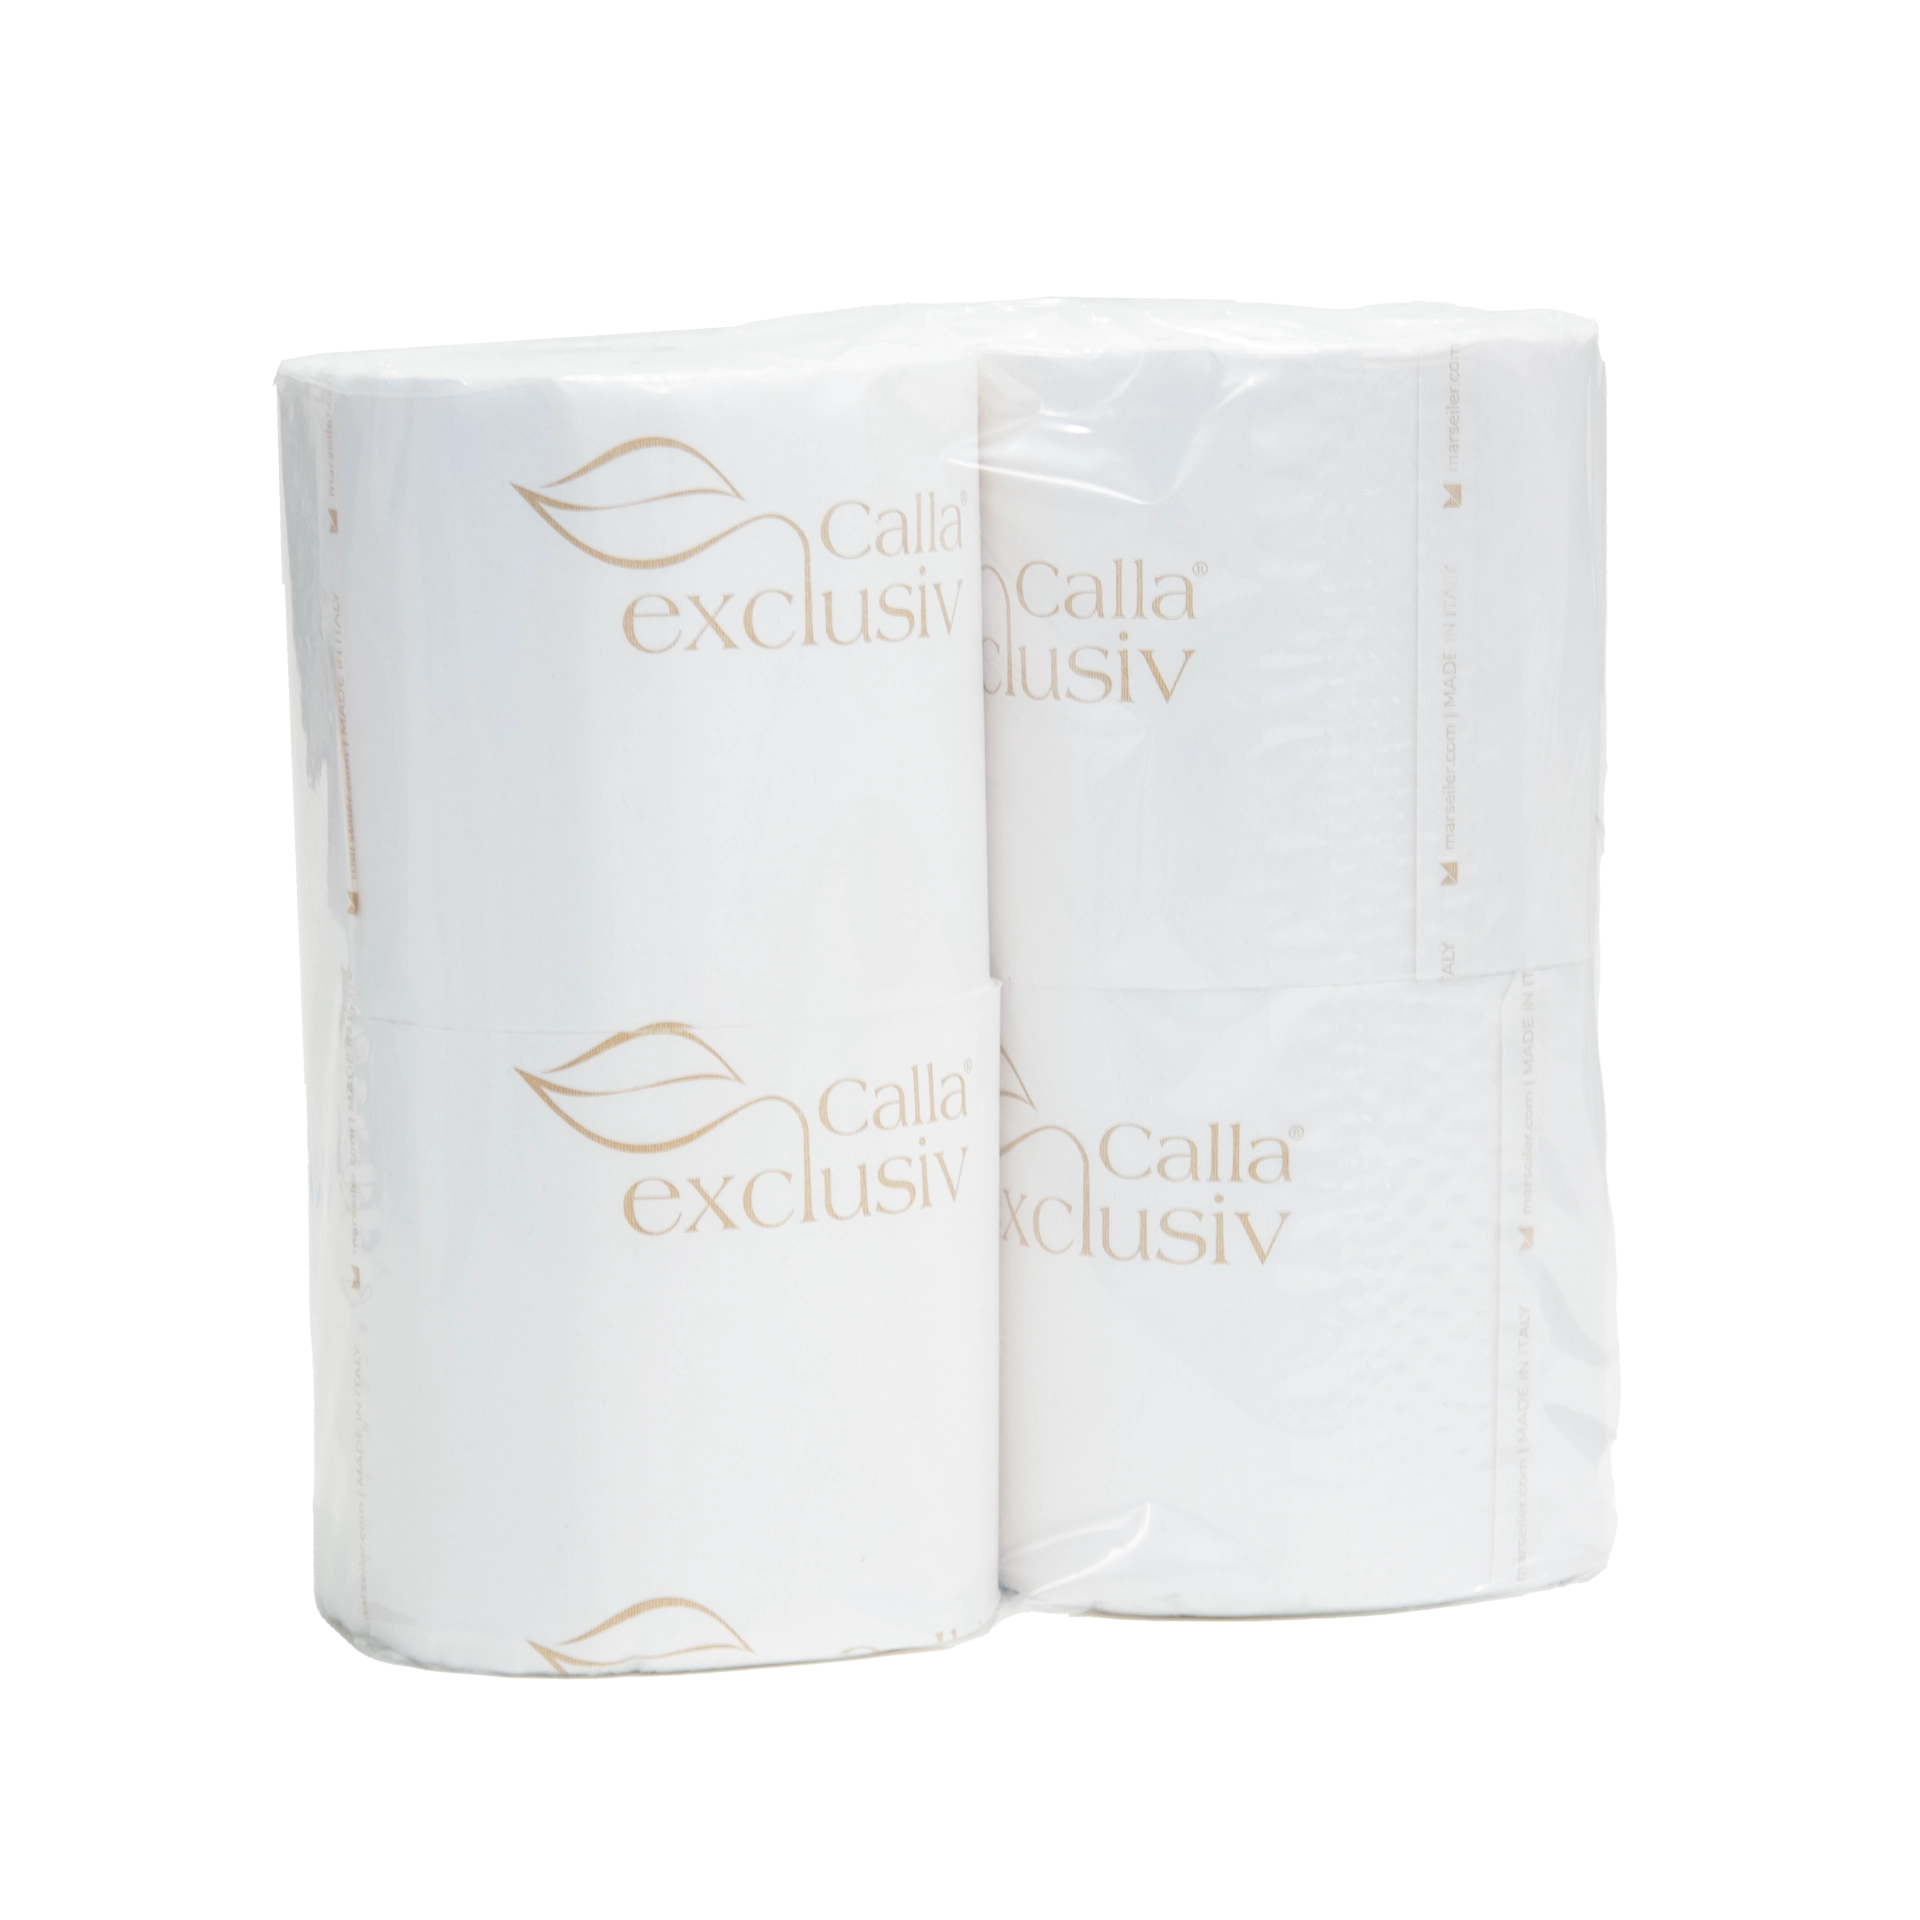 Toilettenpapier | Calla22 weiß 2lg. | mit Schleife 250 Abrisse/12 cm